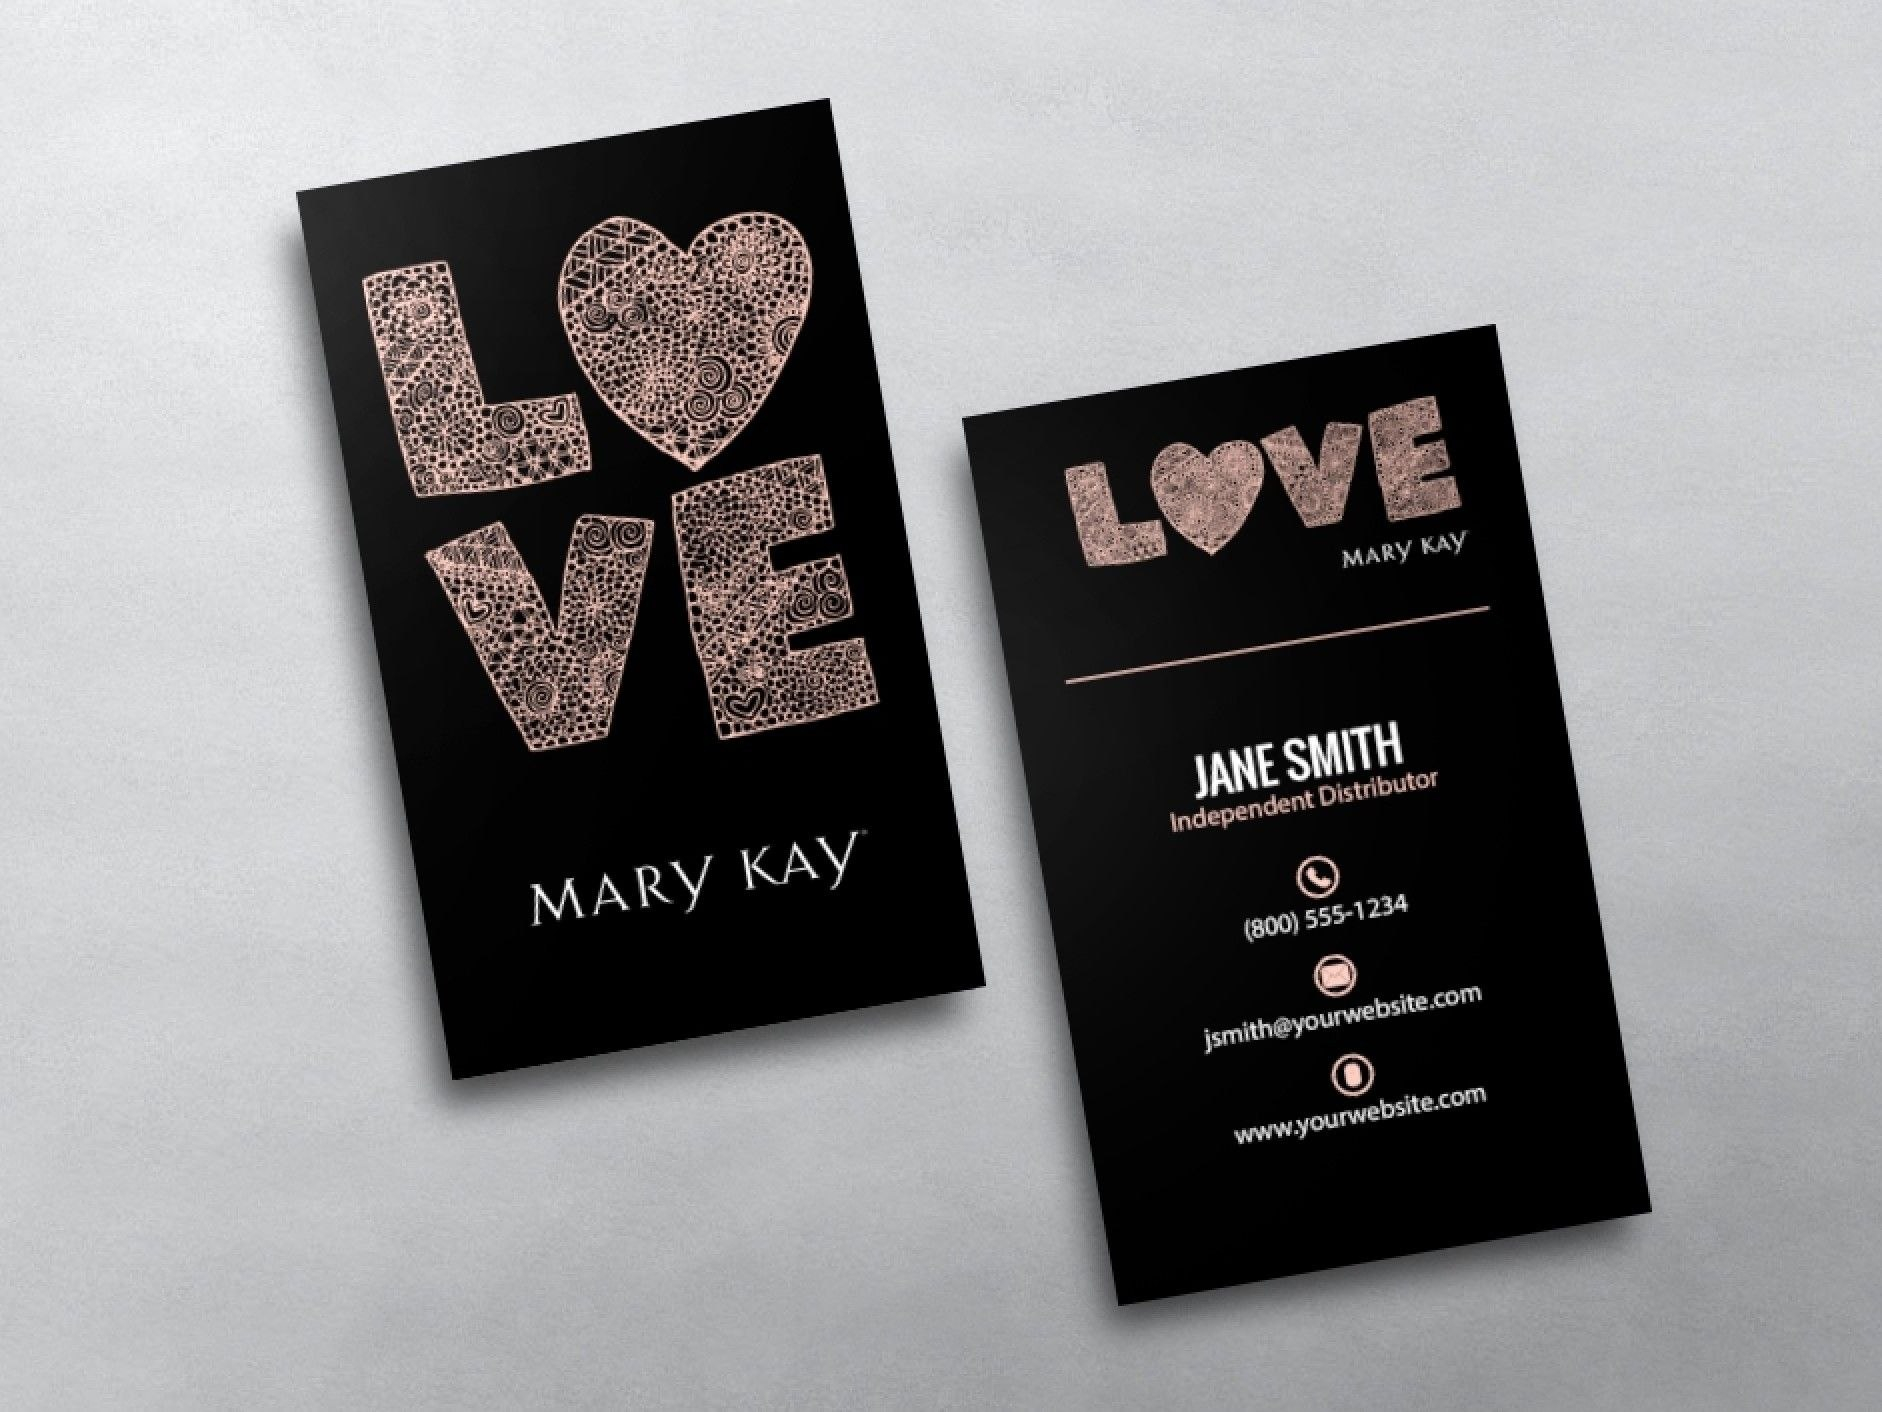 Mary Kay Business Cards In   Mary Kay  Mary Kay Free Business in Mary Kay Business Cards Templates Free